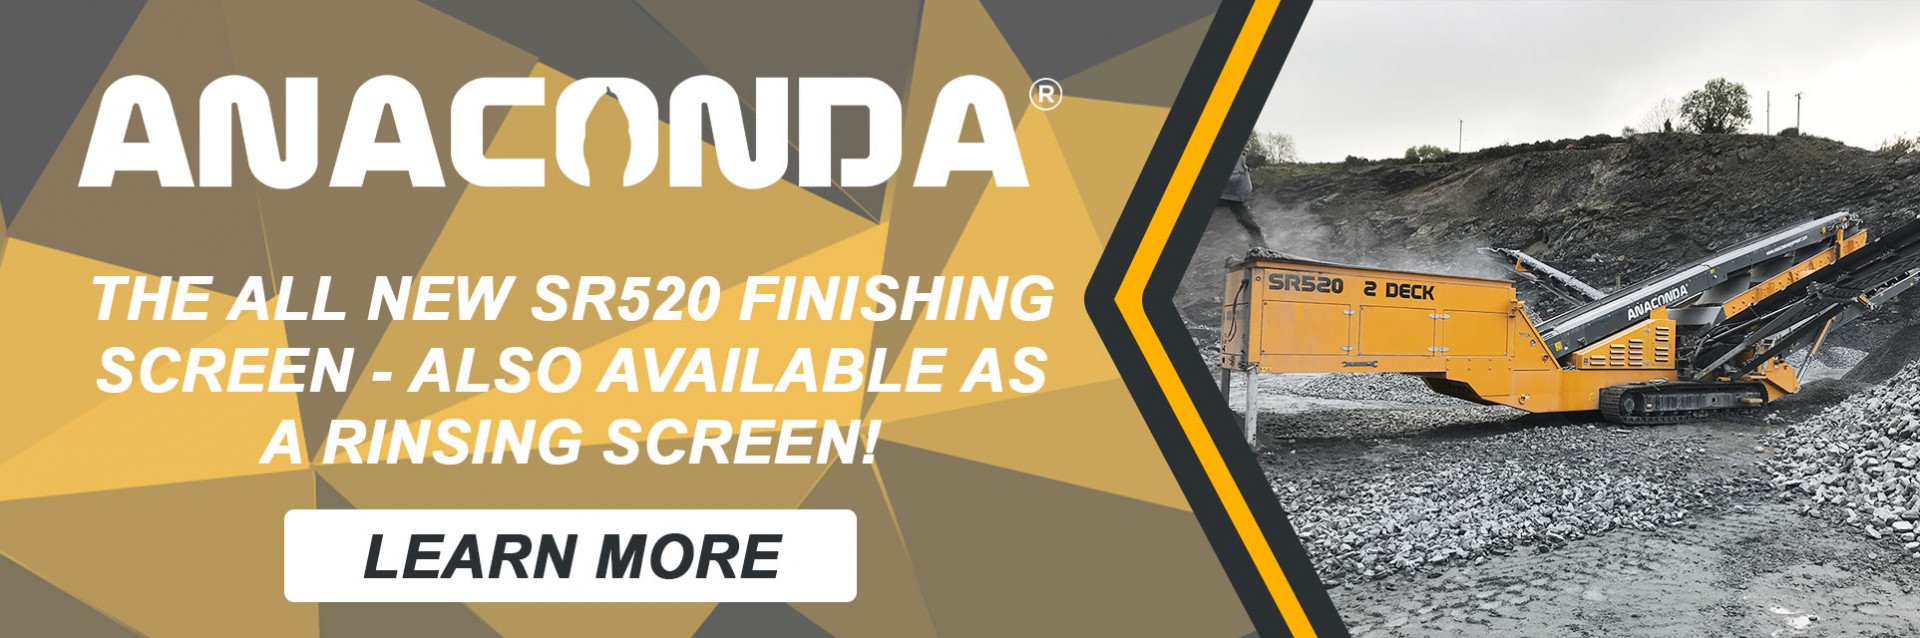 全新的SR520整理屏幕由Anaconda设备